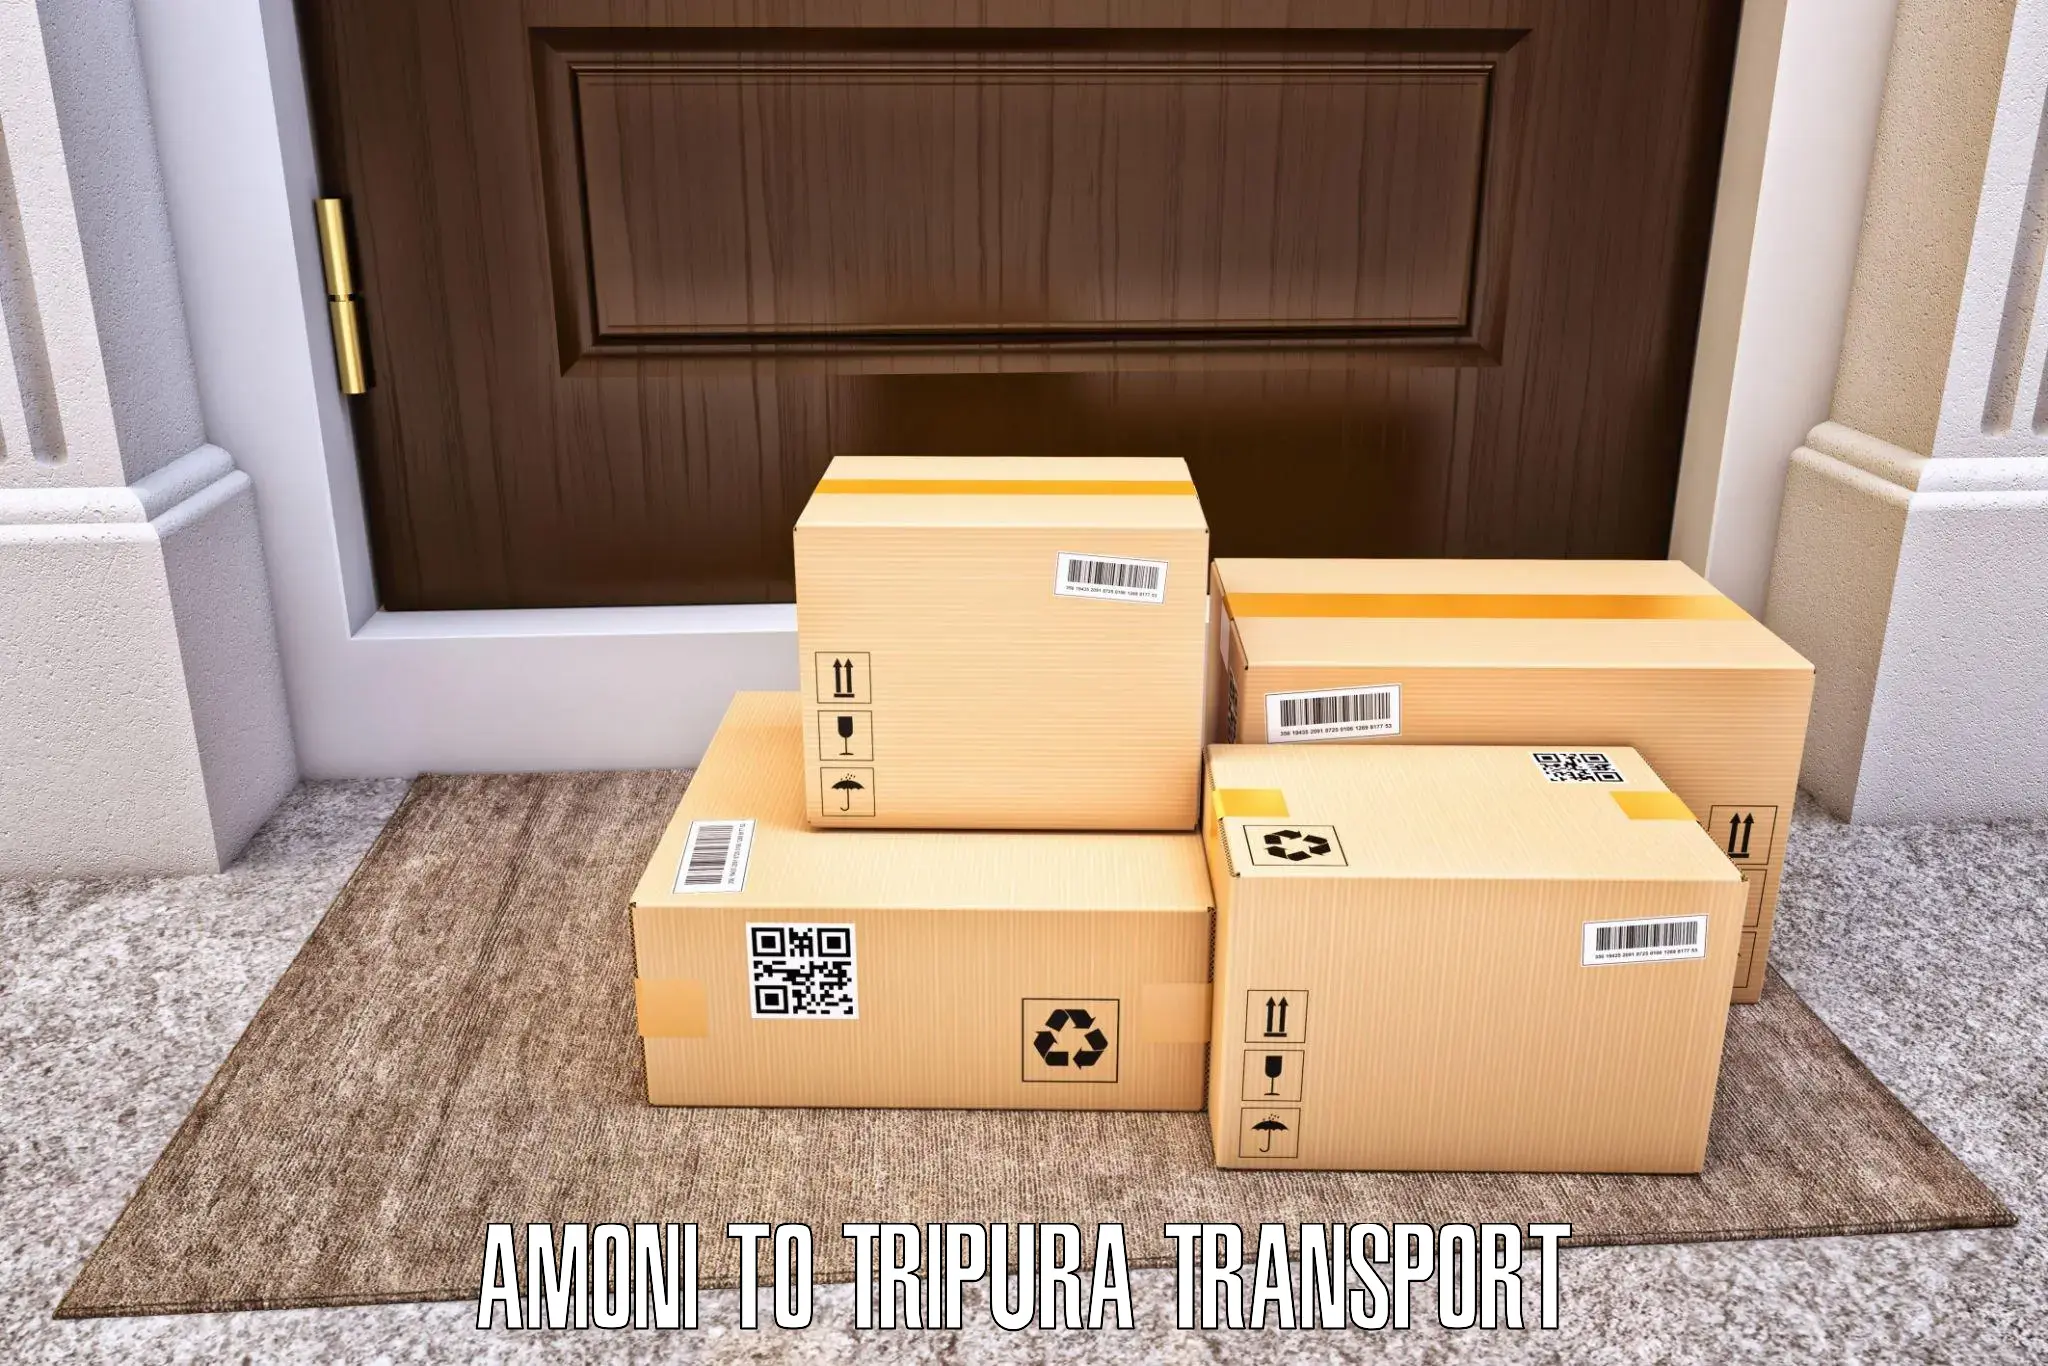 Vehicle transport services Amoni to IIIT Agartala